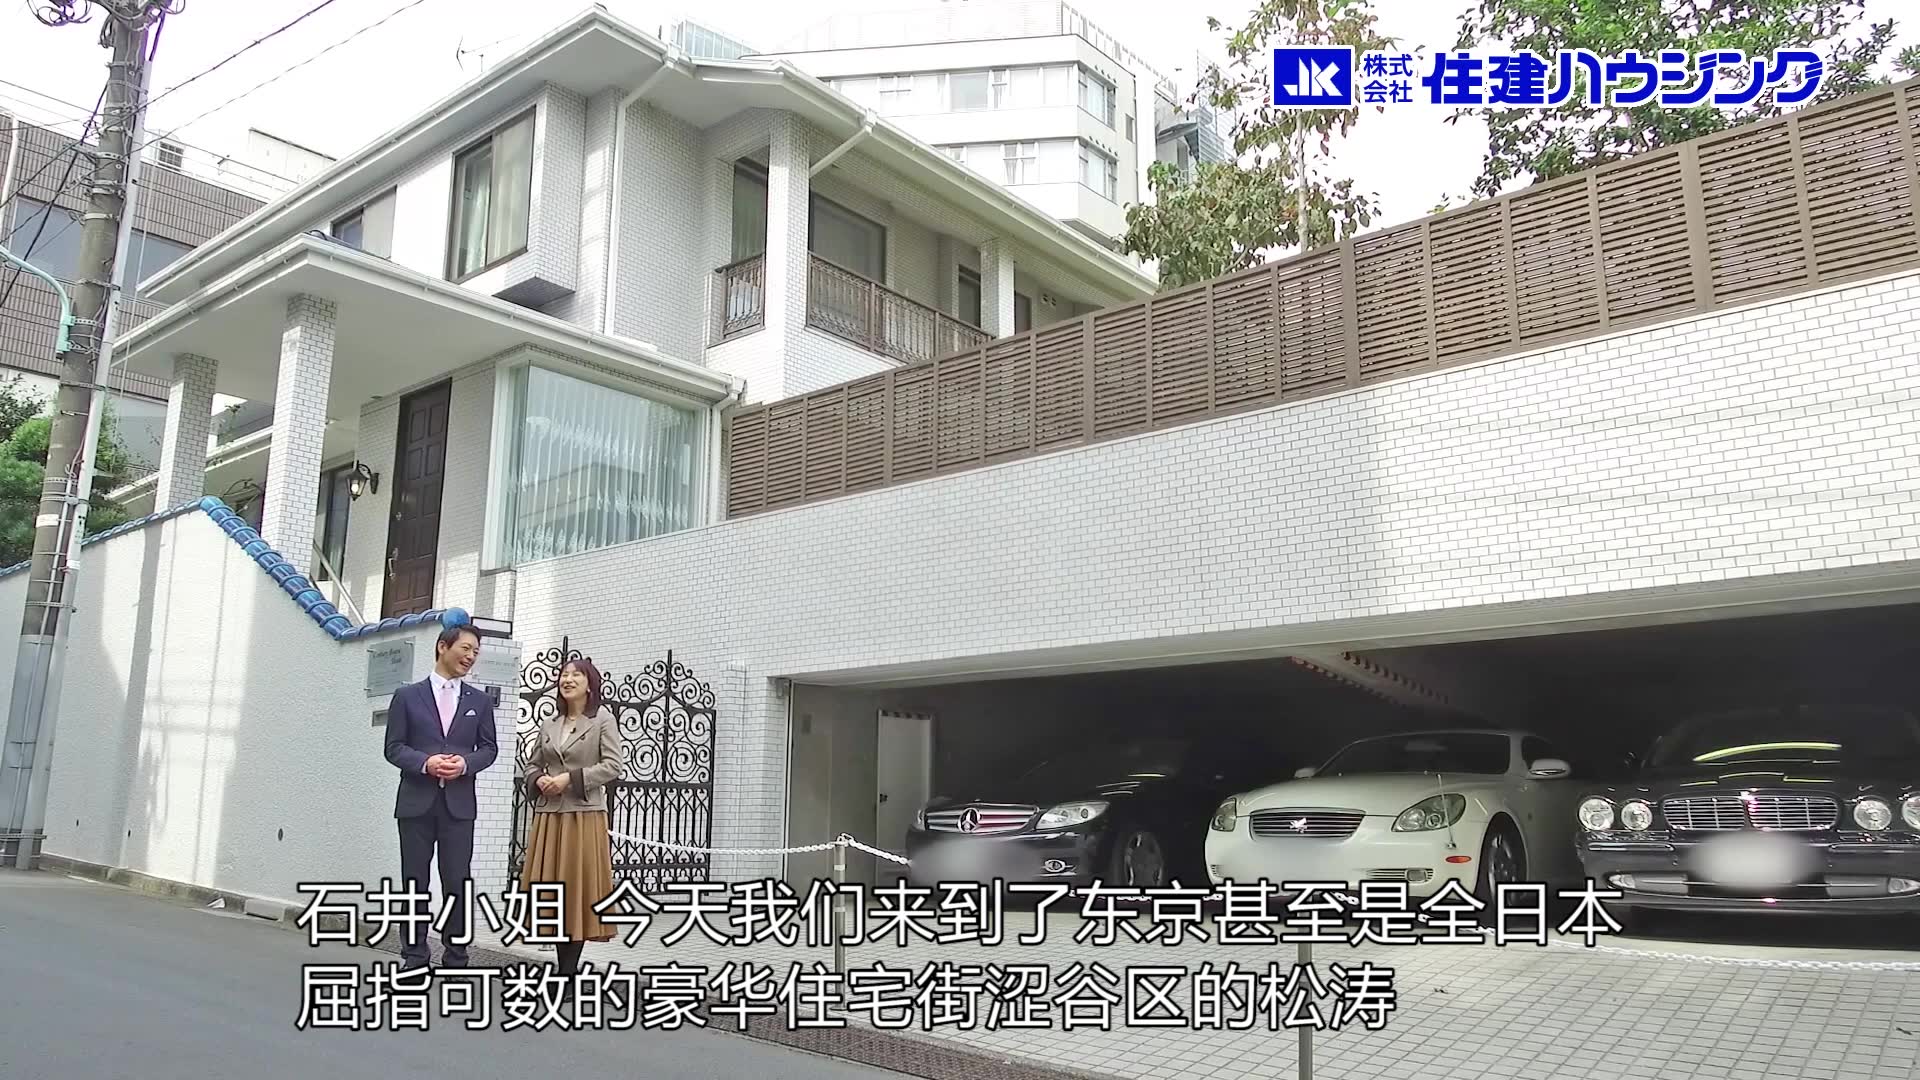 【东京涩谷区豪宅】8000万RMB这是我拍摄过的最贵的房子